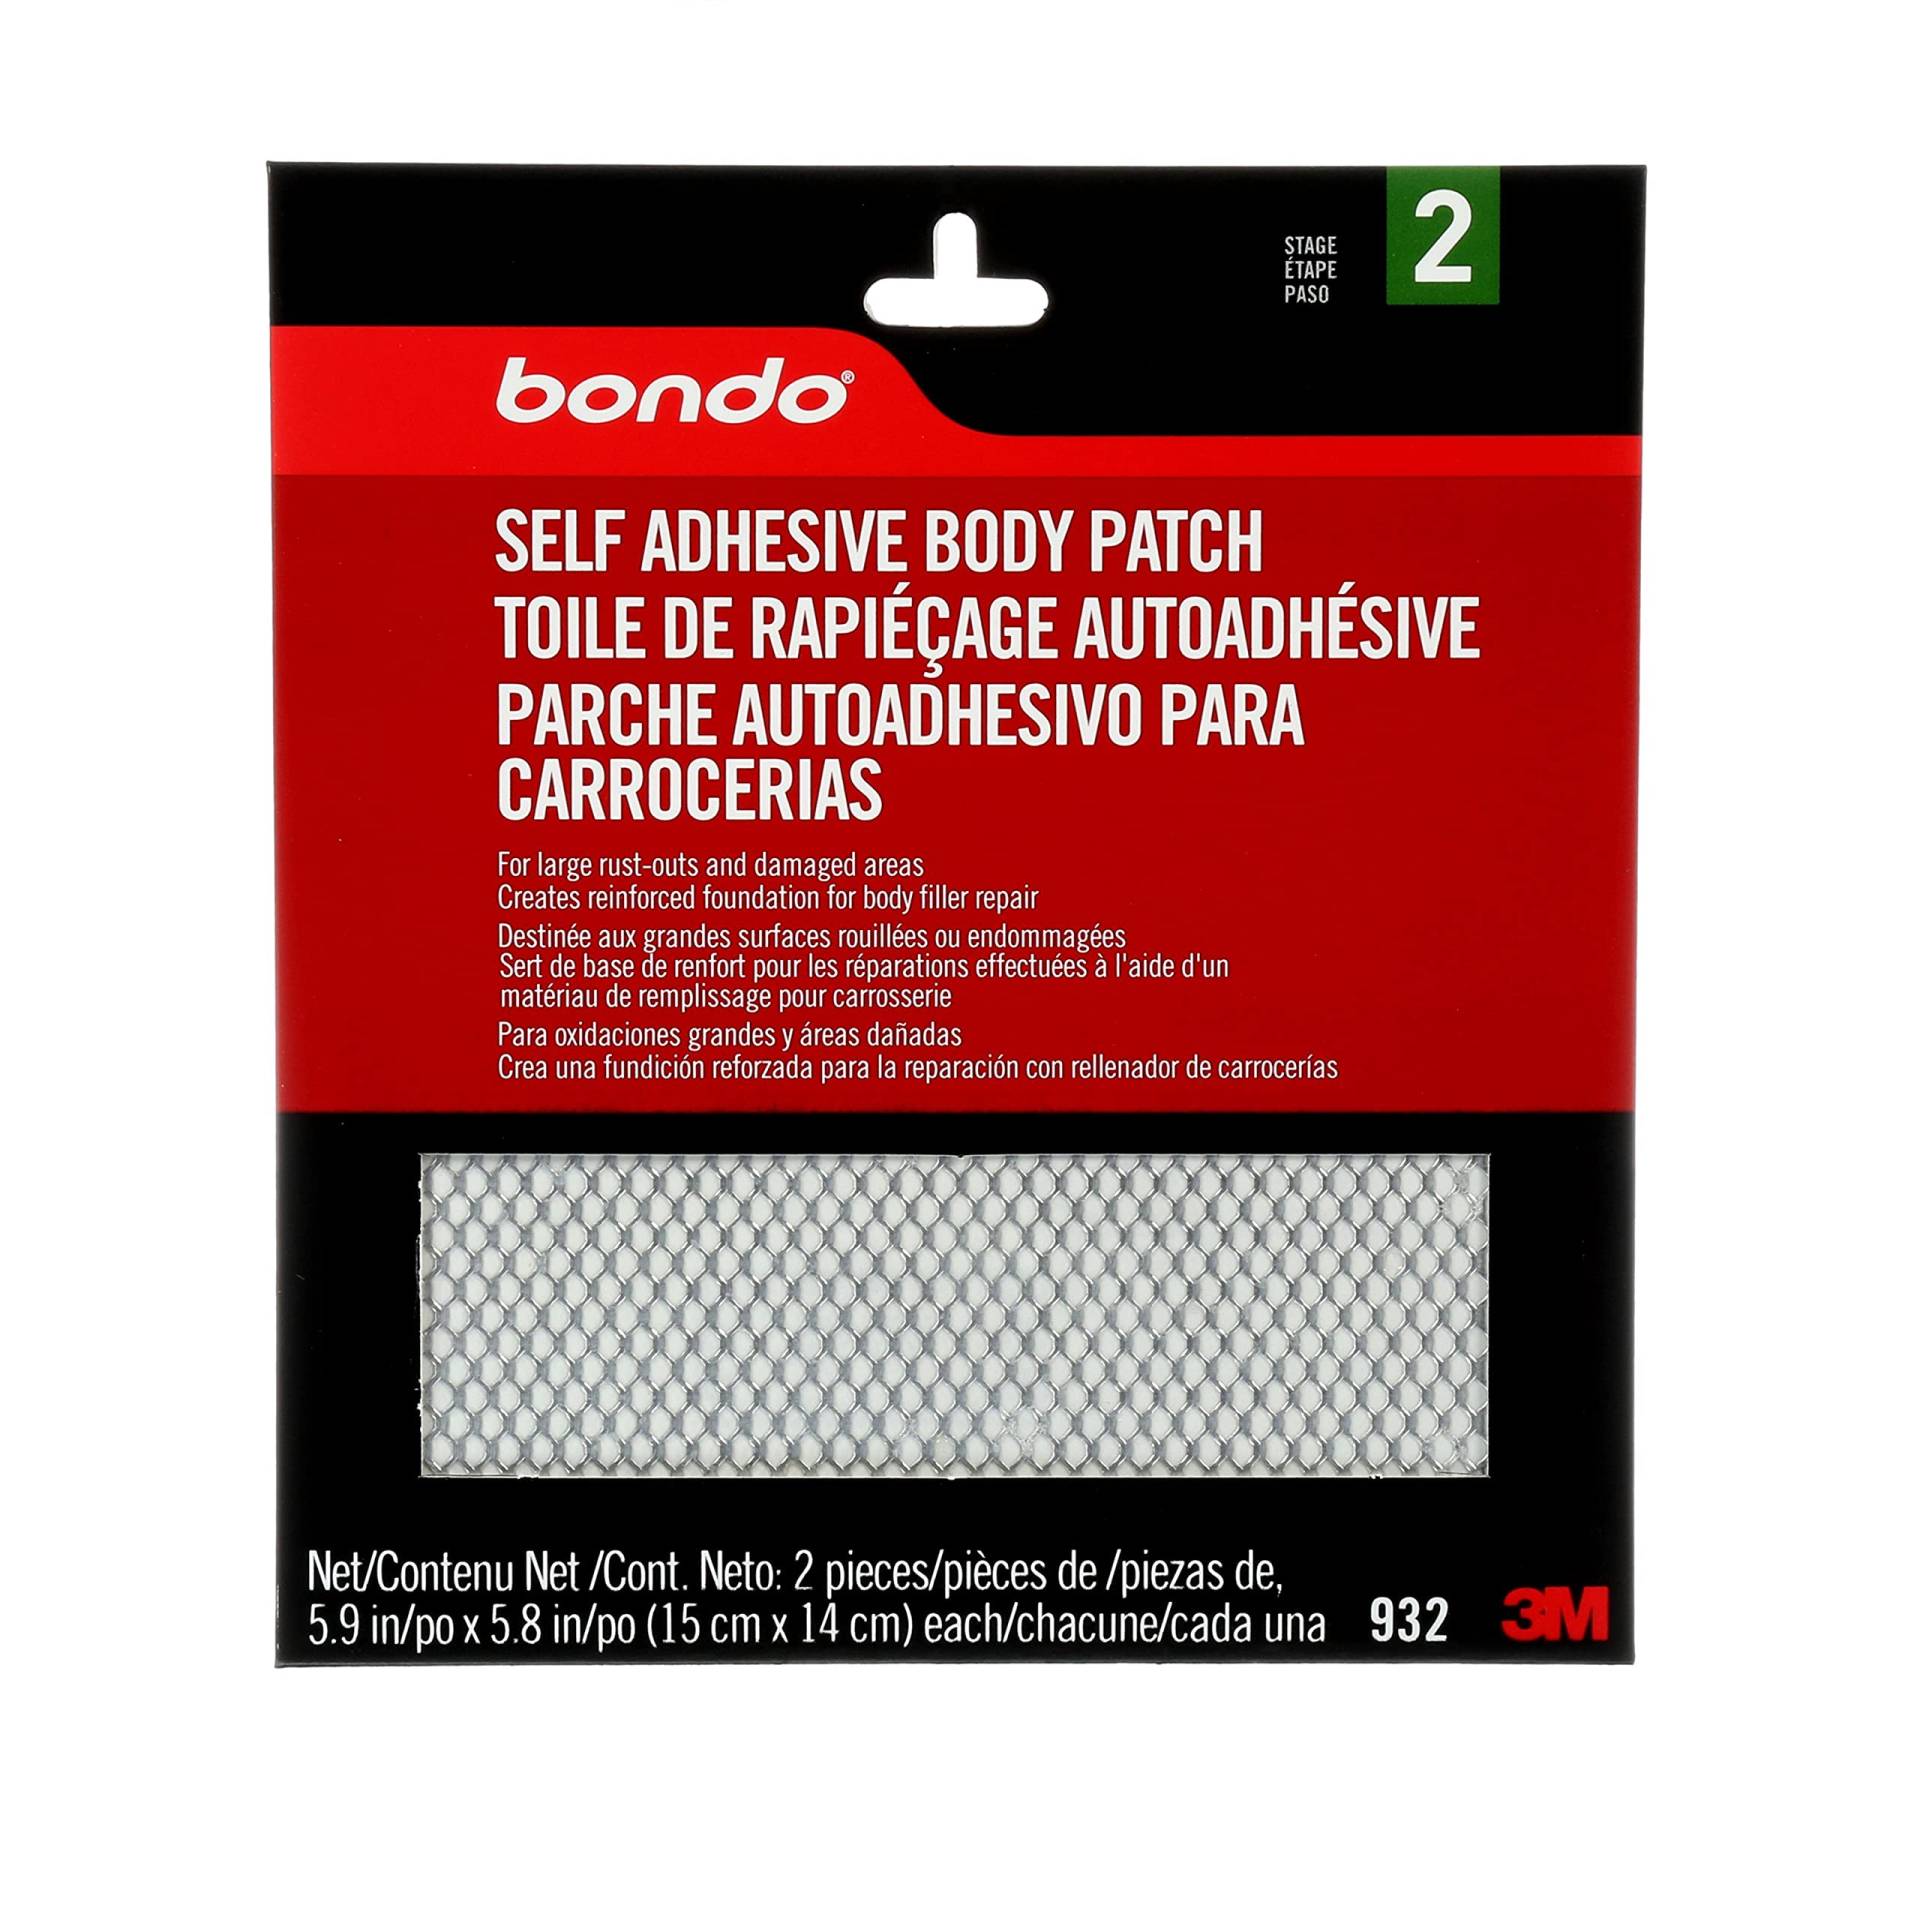 Bondo Körperpflaster selbstklebend für große Ausrostungen und beschädigte Stellen 2 Flicken 15,0 cm x 14,7 cm 2 Flicken von Bondo